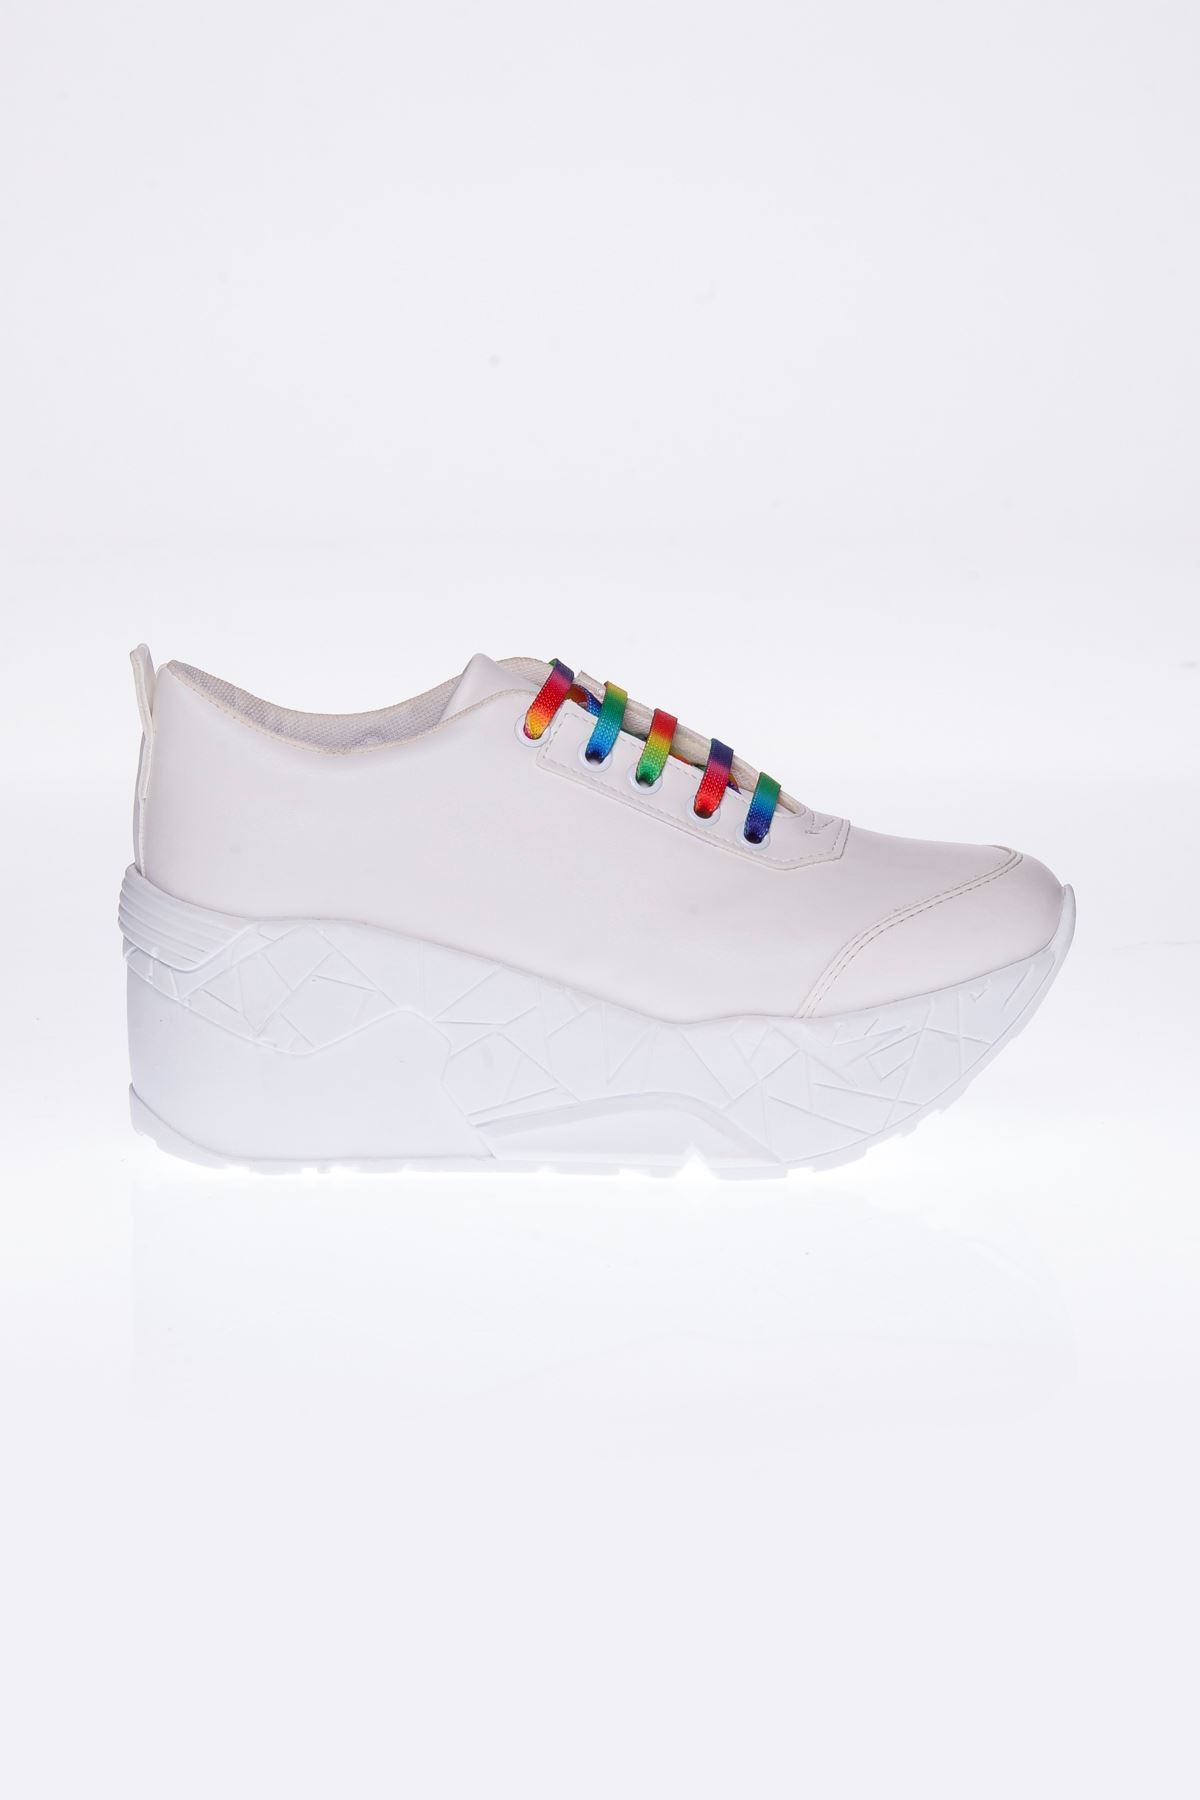 Zeyna Mat Deri Renkli Bağcık Detay Yüksek Tabanlı Spor Ayakkabı Beyaz